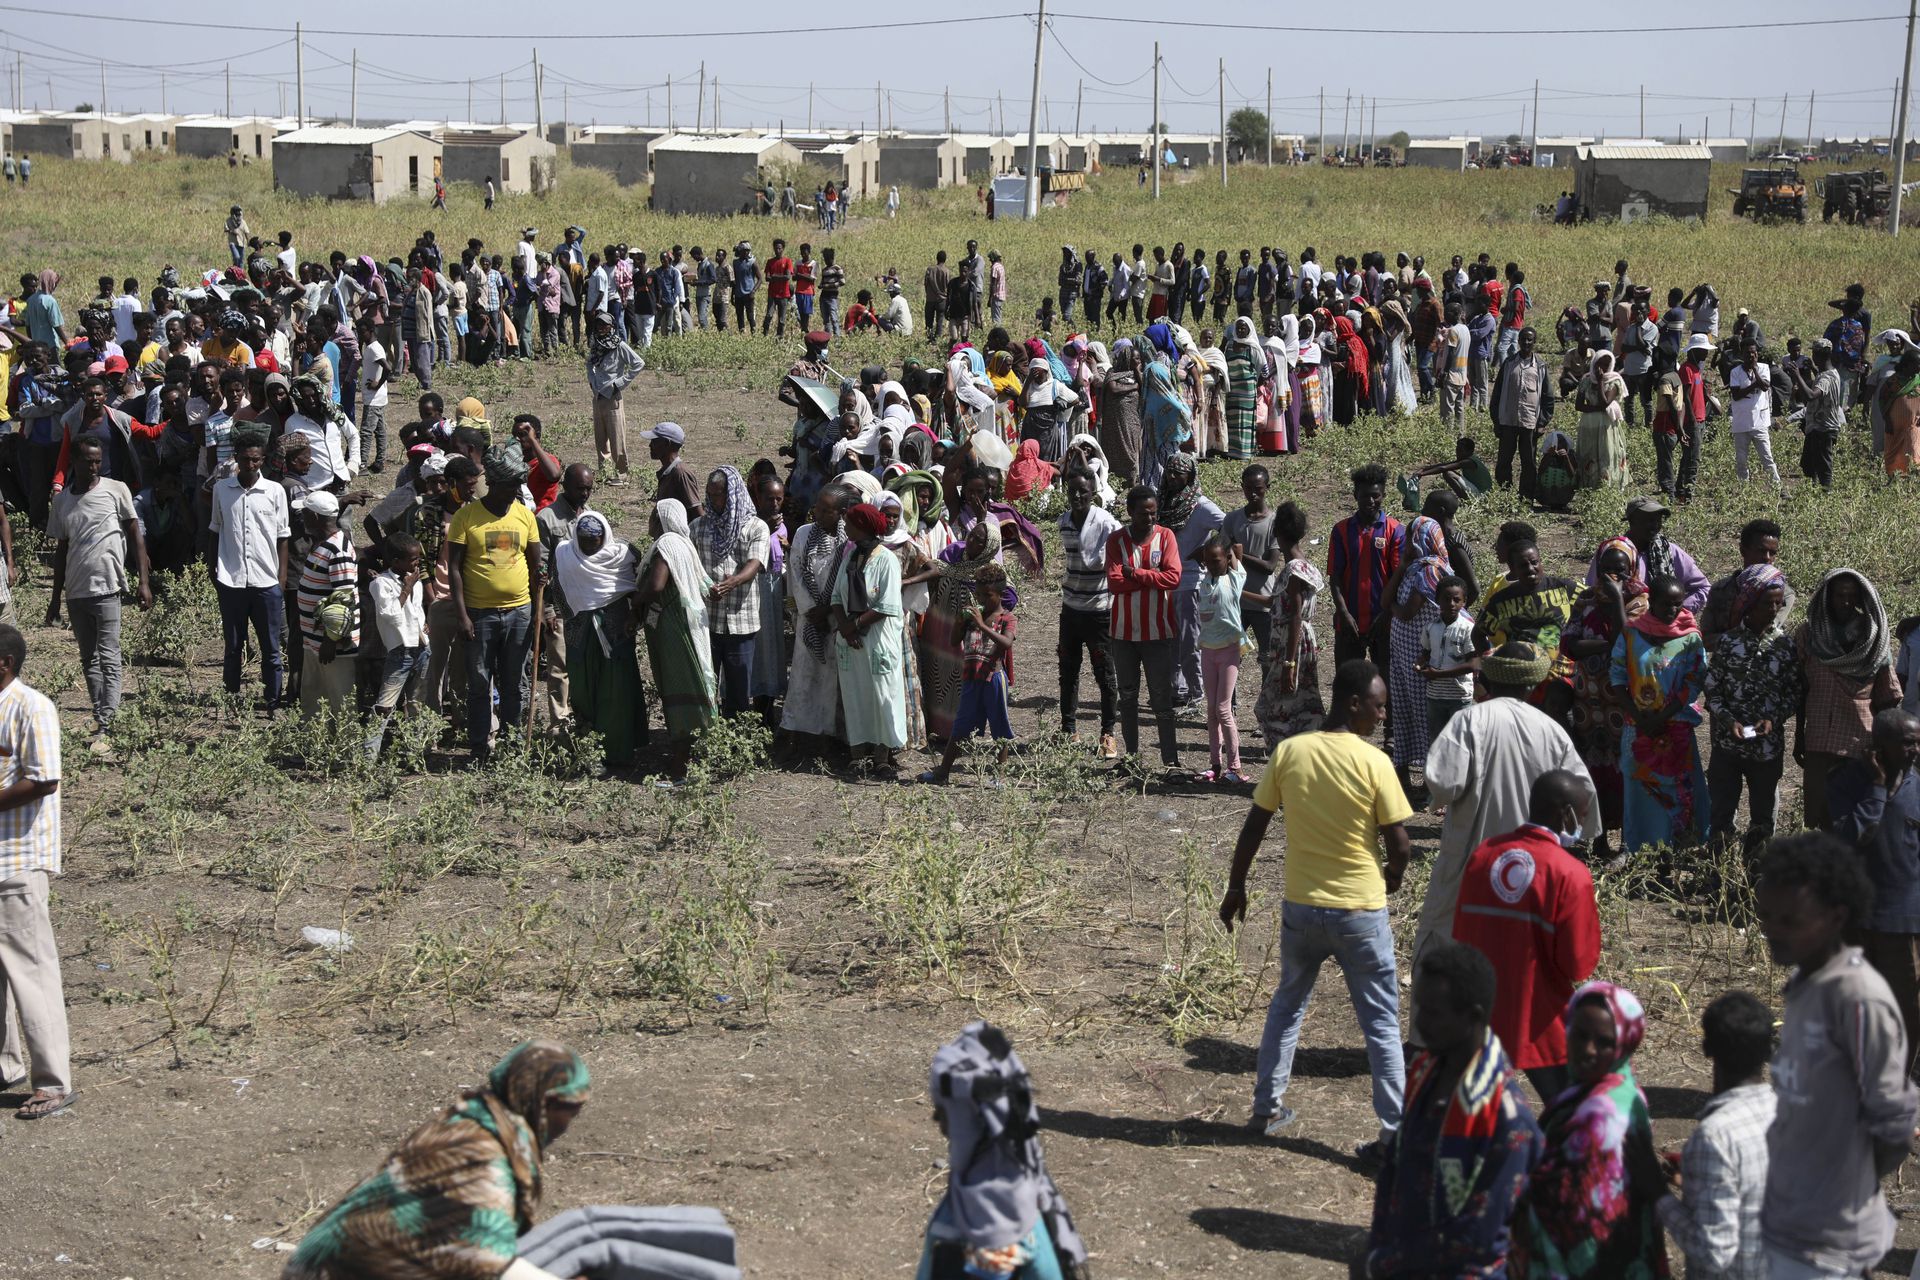 2020年11月21日星期六，复活节苏丹，埃塞俄比亚难民聚集在Qadarif地区。联合国难民署说，埃塞俄比亚不断升级的冲突已经导致数千人从提格雷地区逃往苏丹。与此同时，战斗已经蔓延到埃塞俄比亚边境以外，并有可能激化非洲之角地区的局势。（AP）